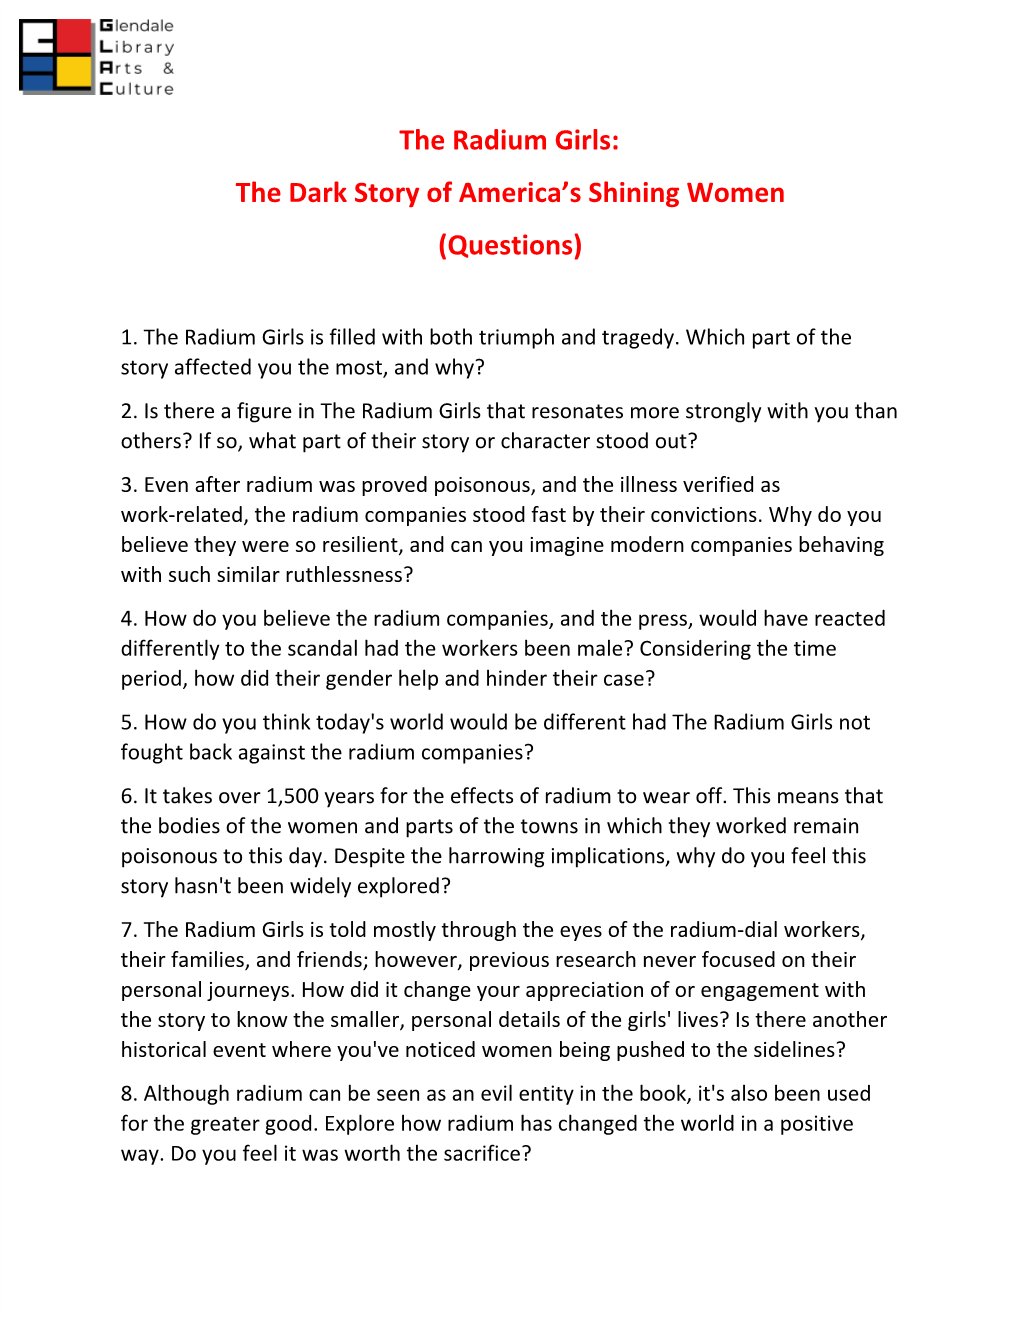 The Radium Girls: the Dark Story of America's Shining Women." It's by Kate Moore